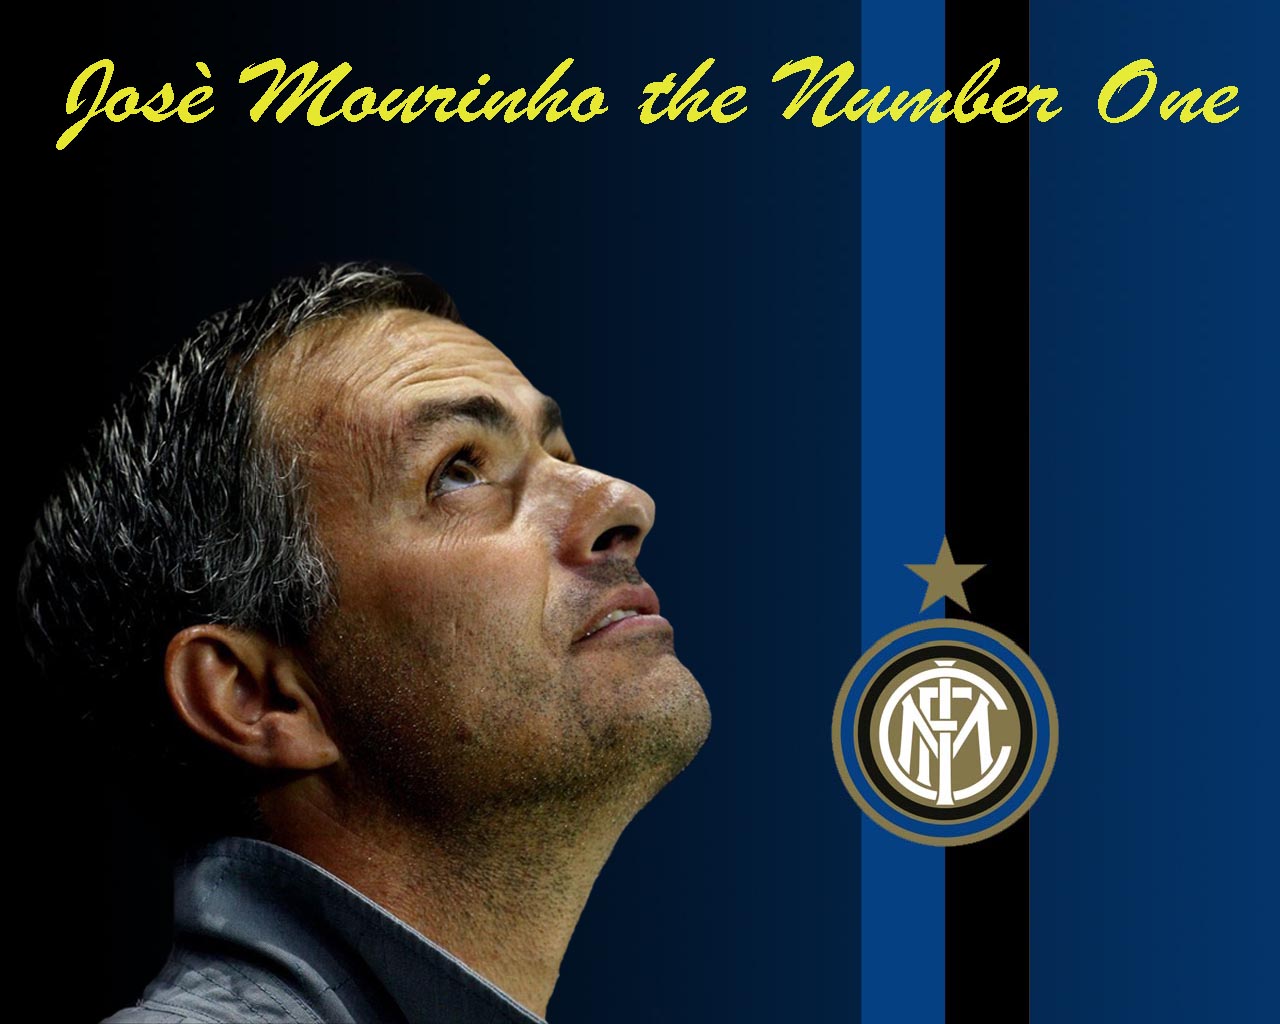 Jose Mourinho Wallpaper - Inter , HD Wallpaper & Backgrounds